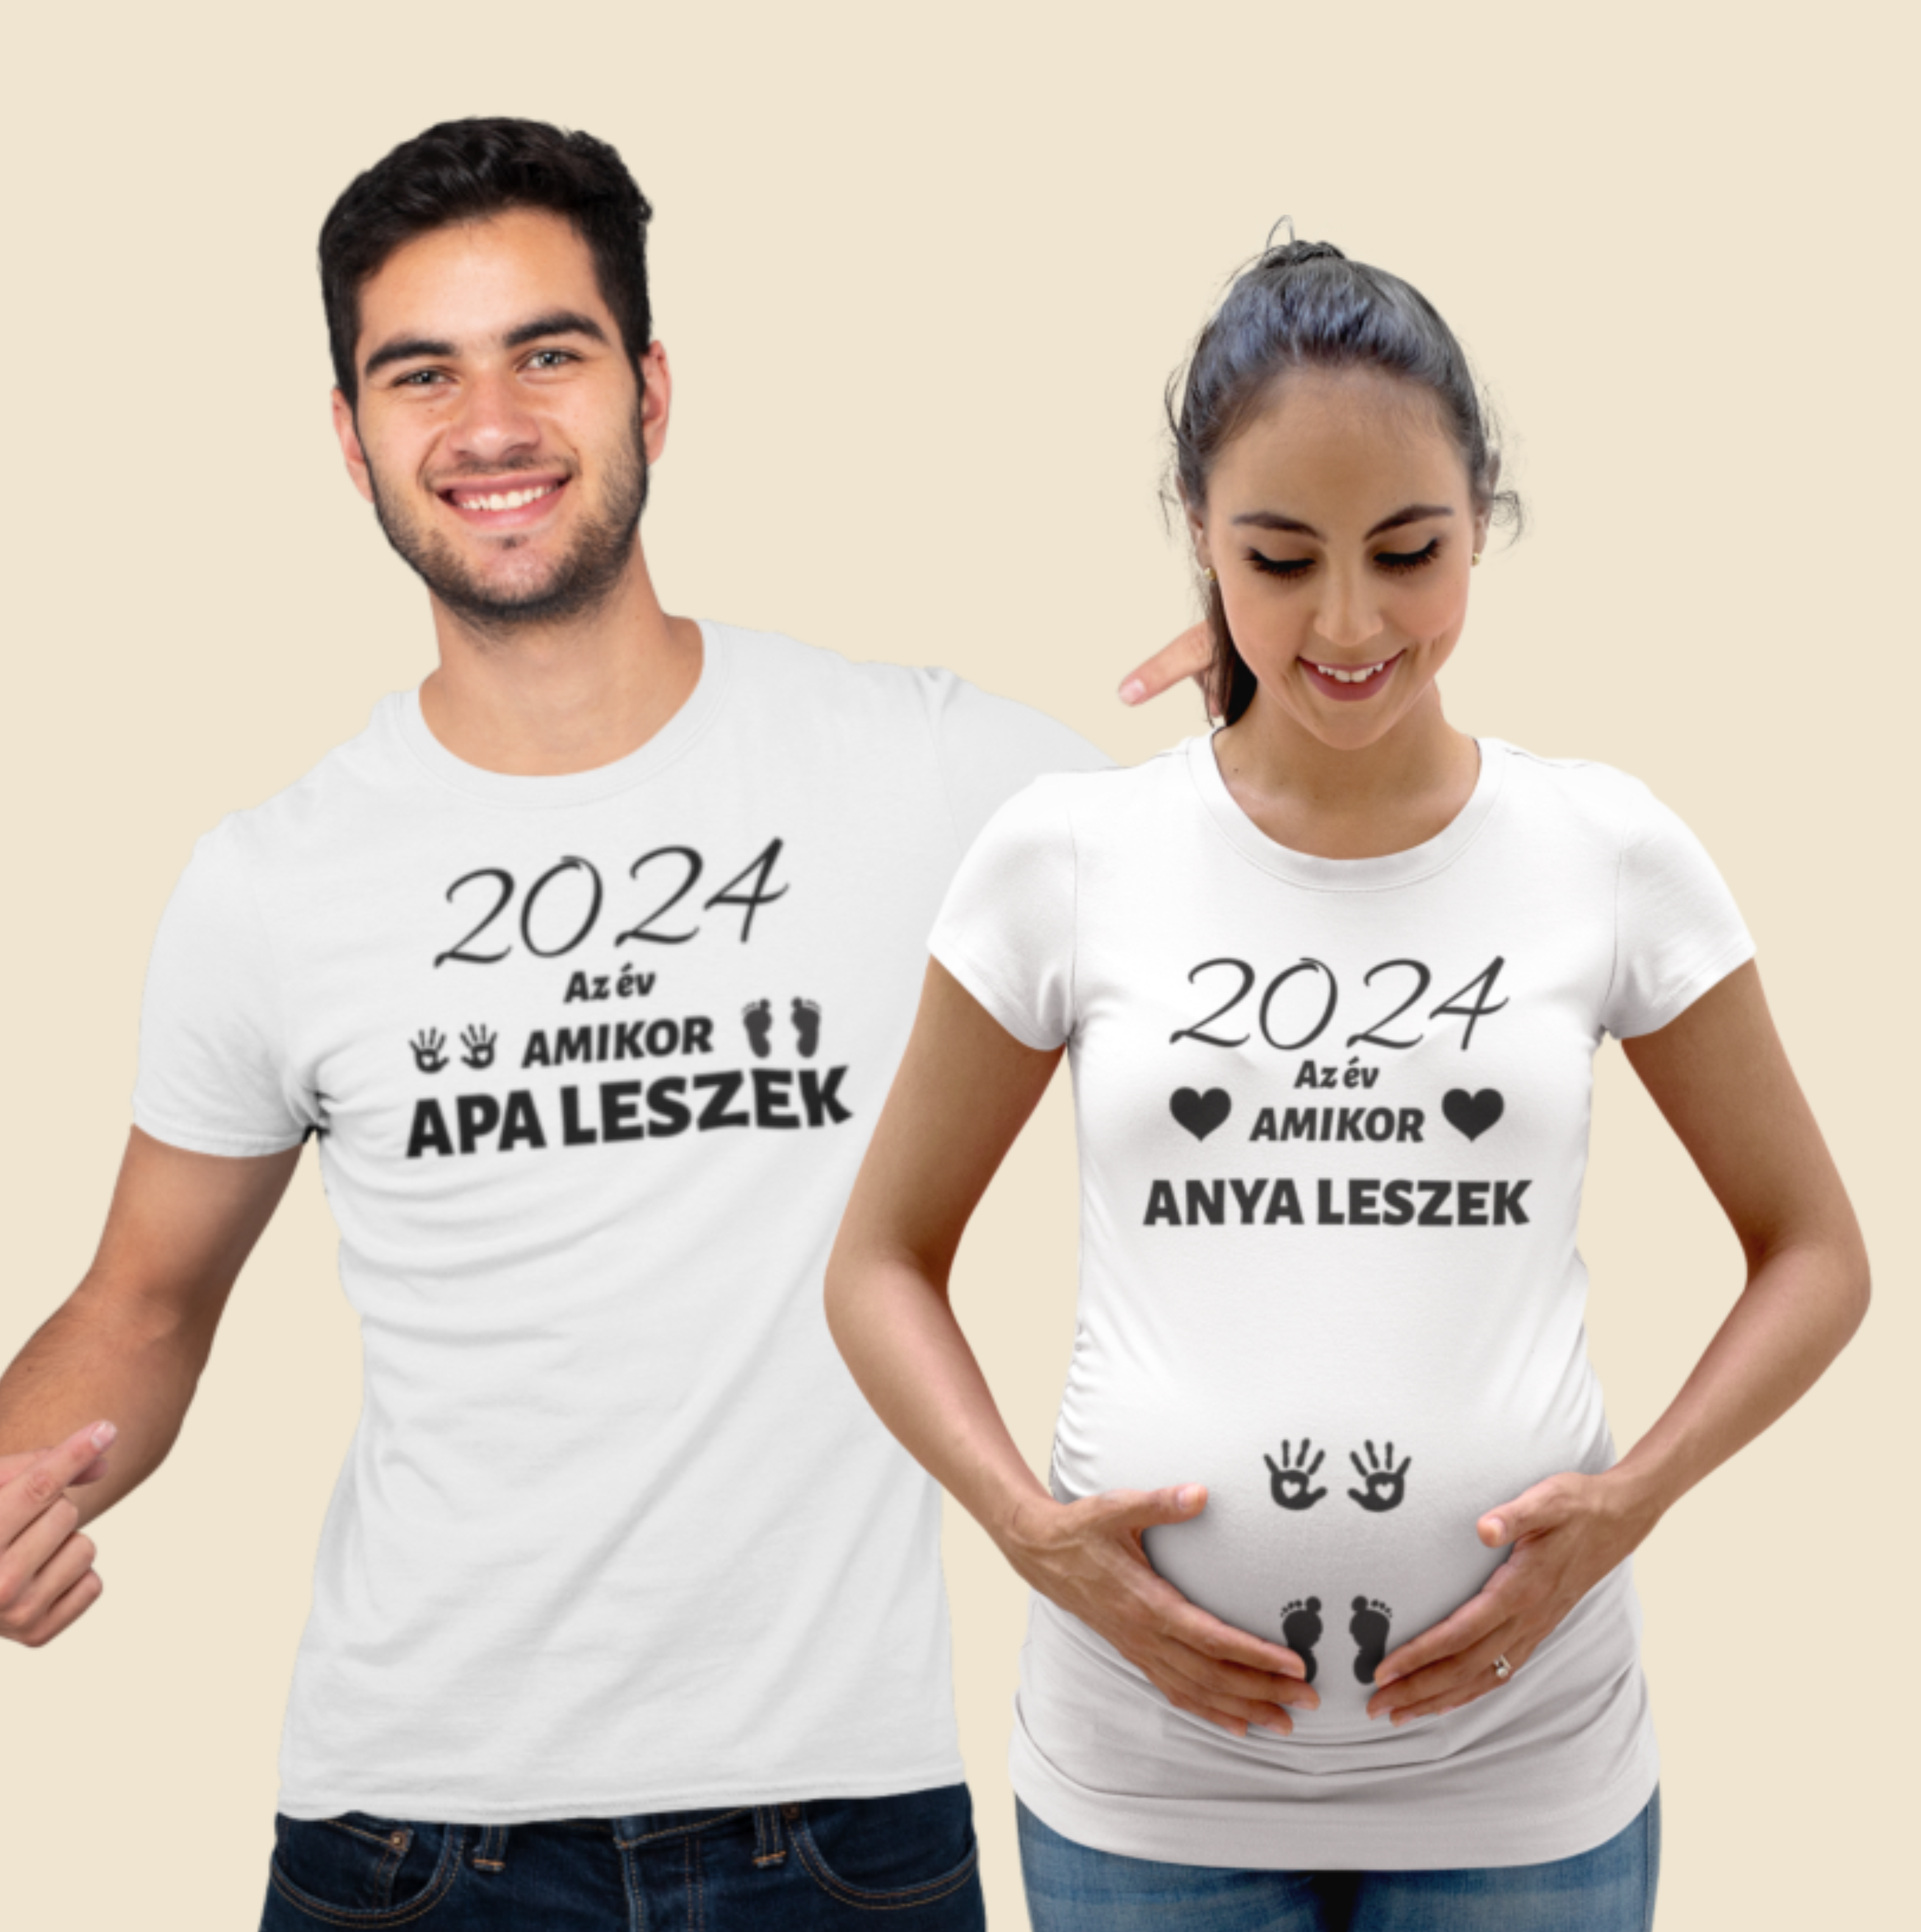 2024 az év amikor anya leszek/2024 az év amikor apa leszek fehér p (2 db póló)